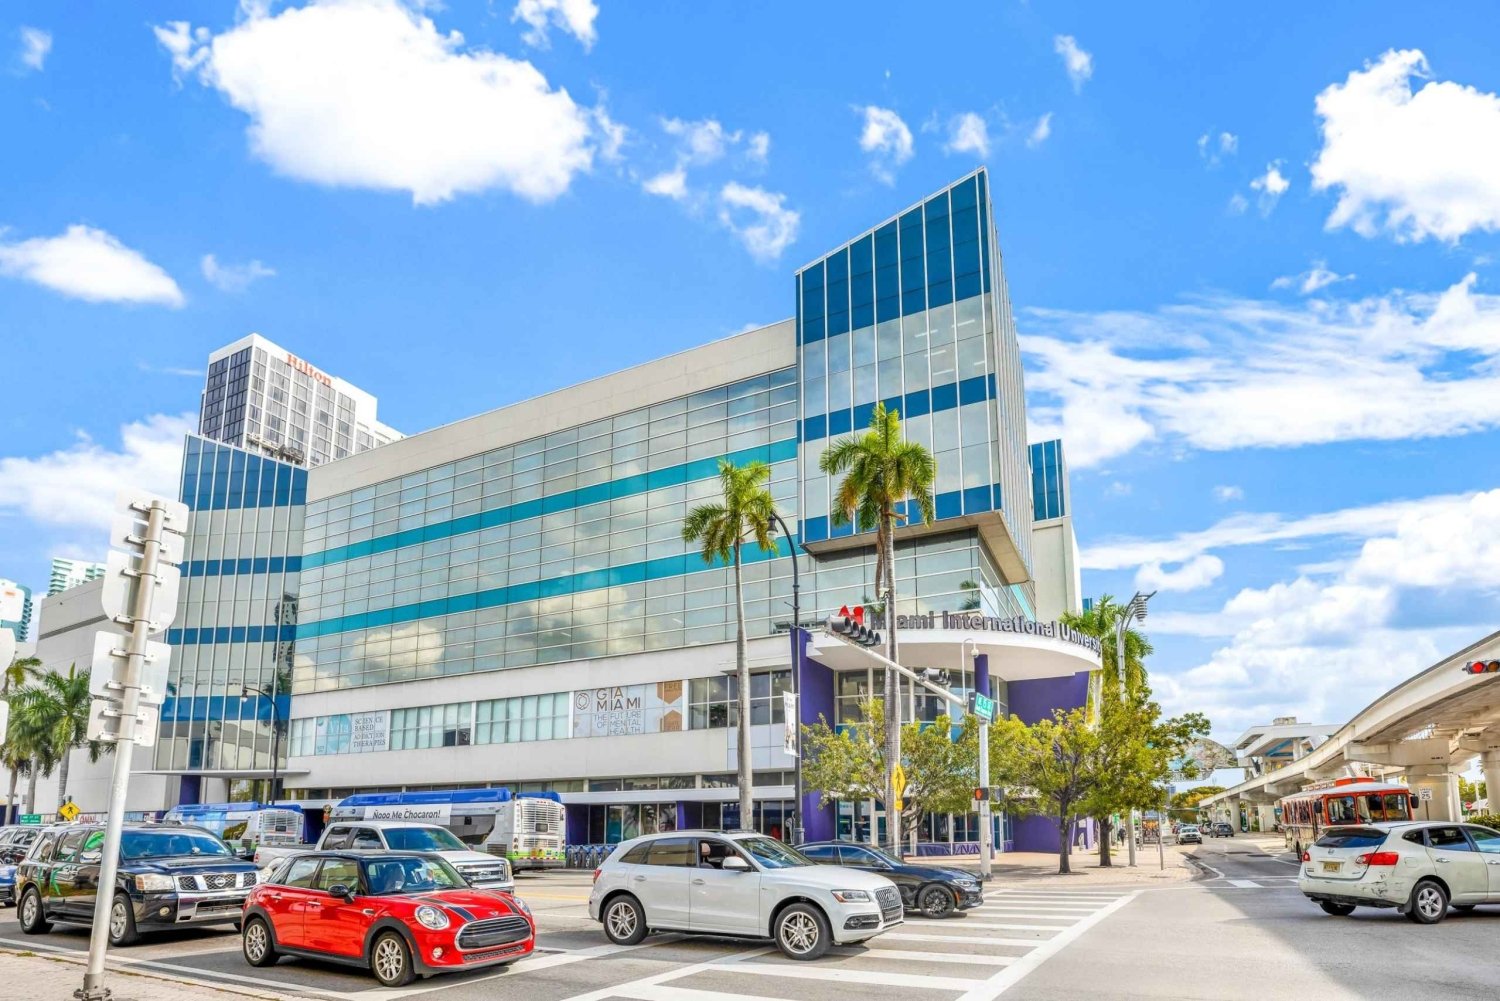 Miami: Zugang zur Cruise Line Lounge und Gepäckaufbewahrung